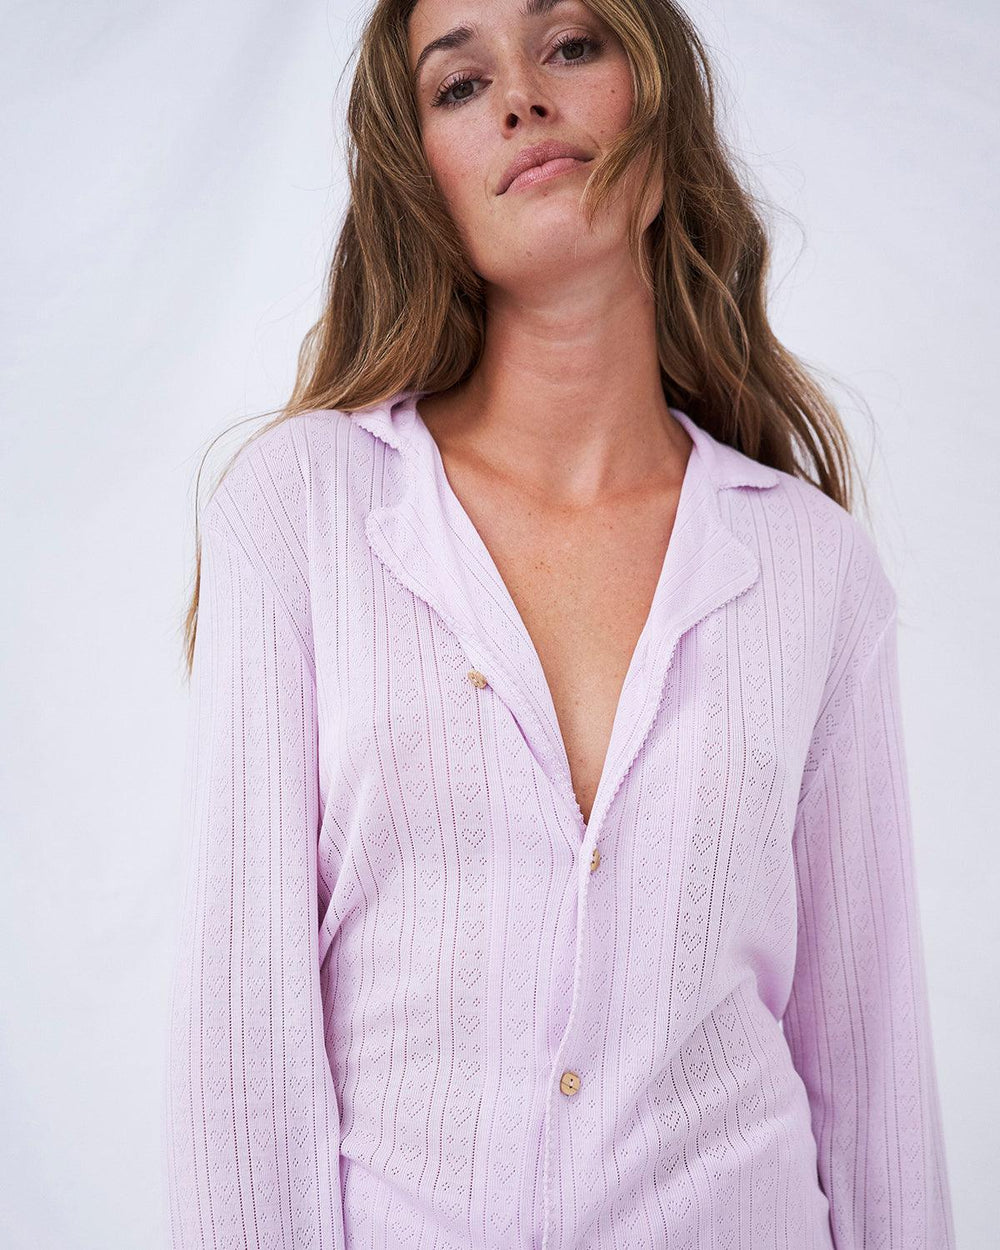 Pointelle Knit Long Pyjama Set - Lilac Stripe & Stare